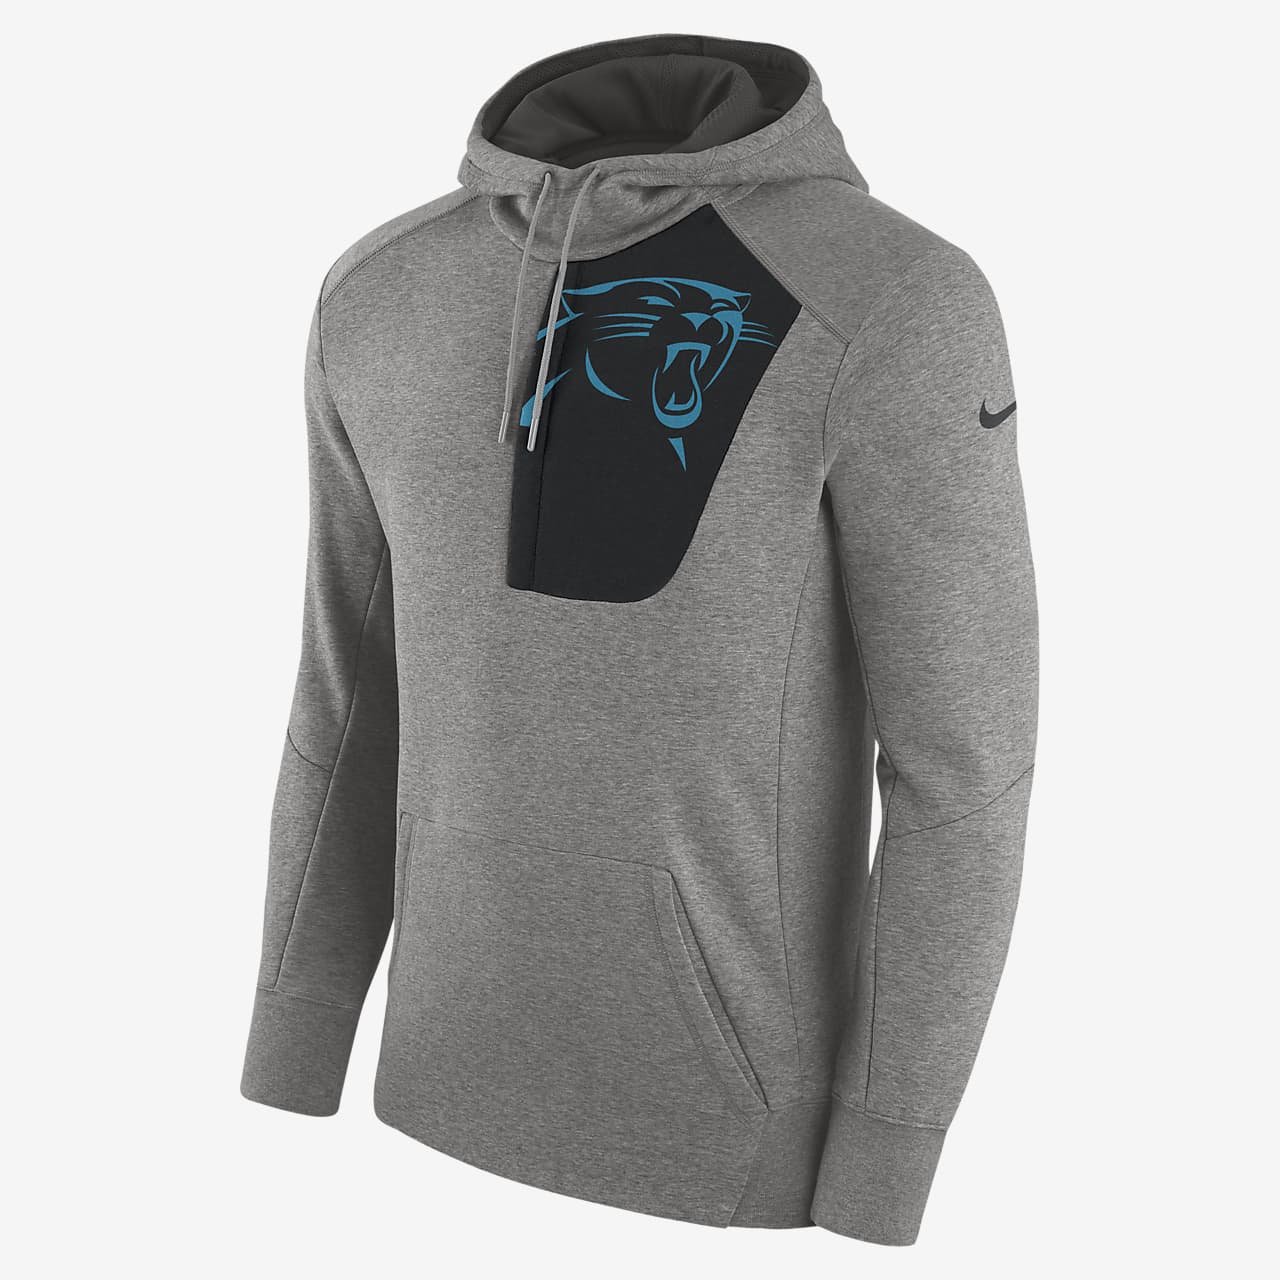 Nike Fly Fleece (NFL Panthers) Men's Hoodie